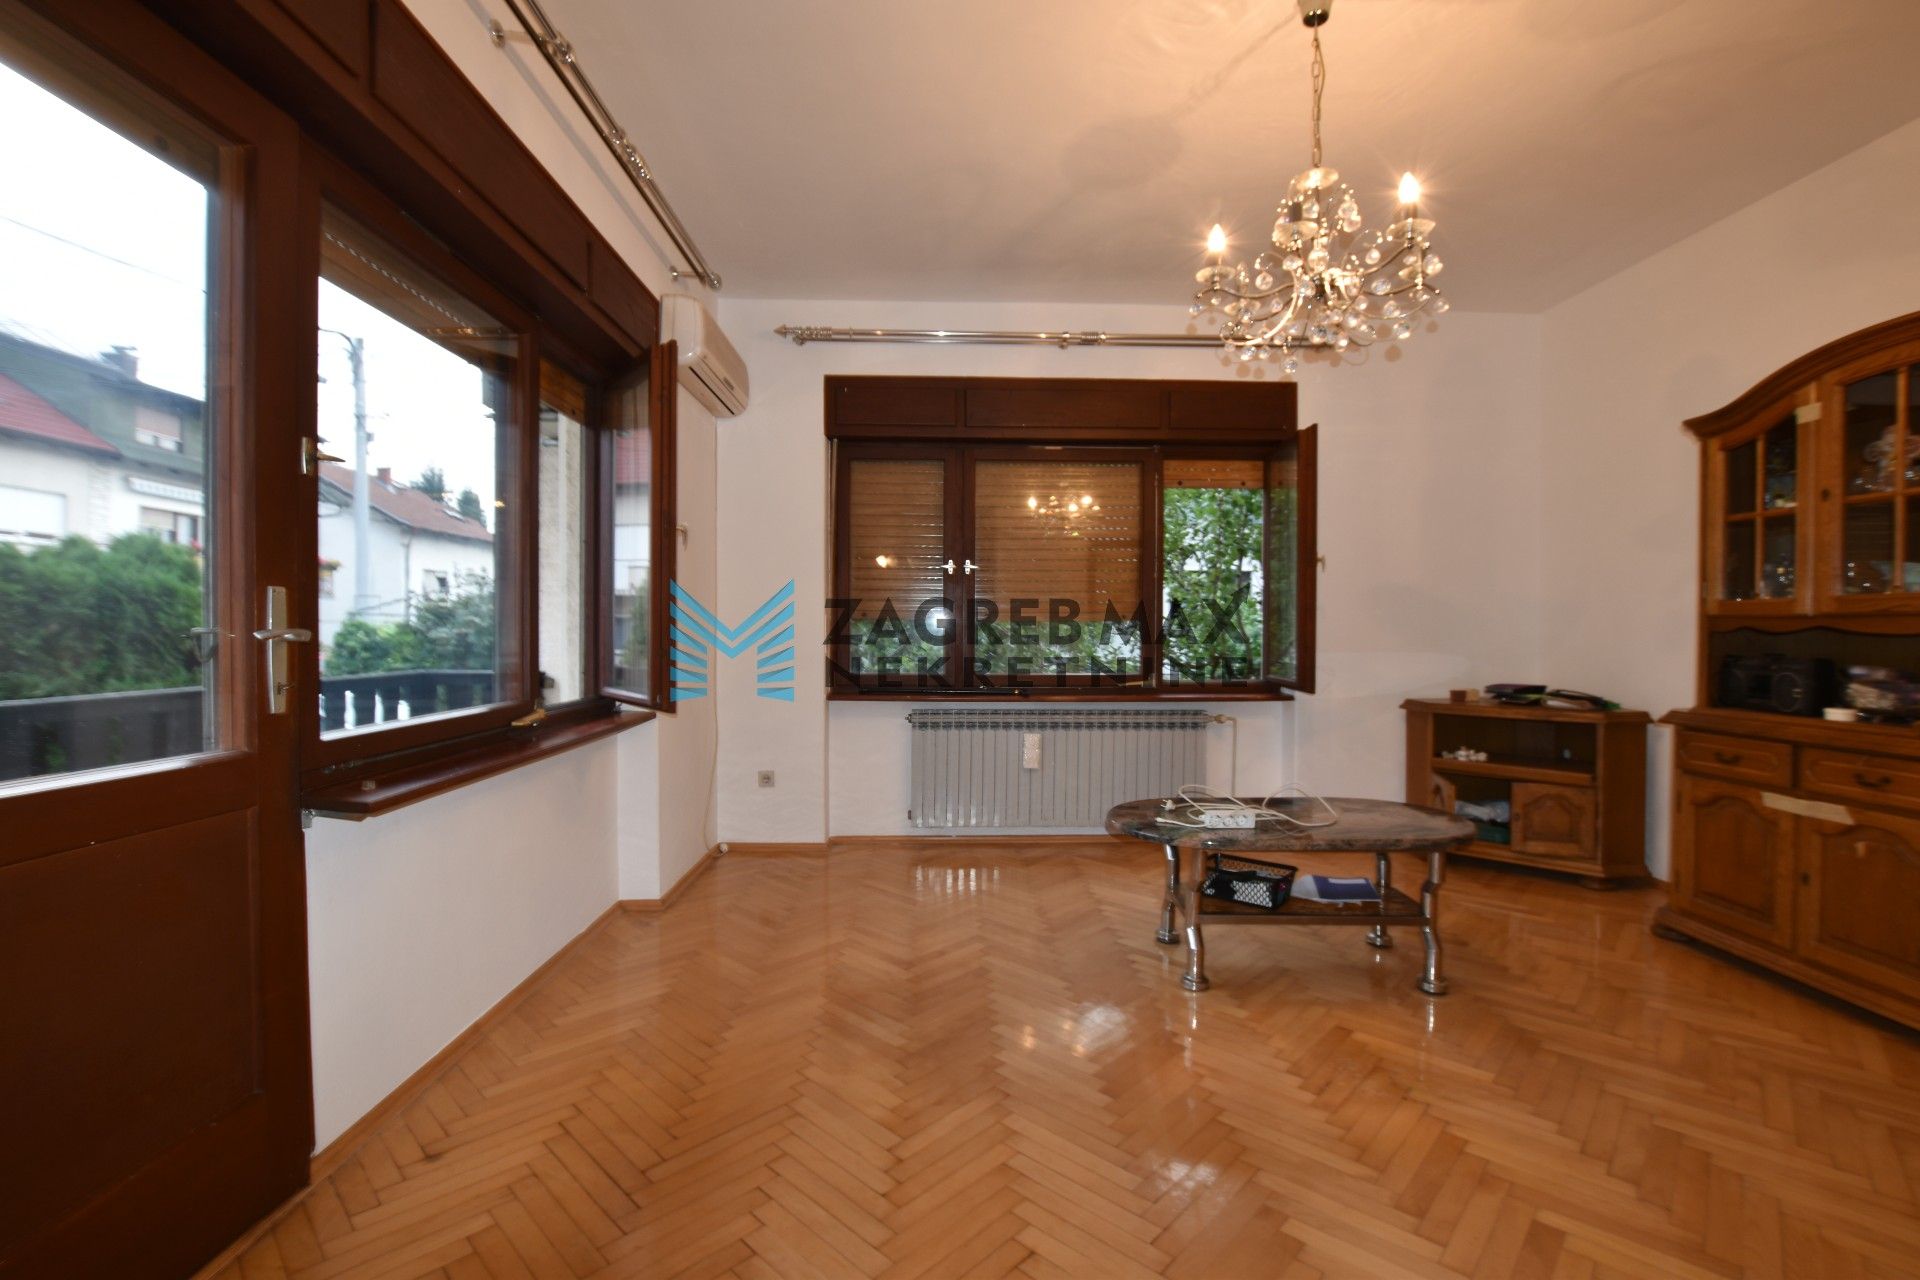 Zagreb - NAJAM - KUSTOŠIJA Obiteljska kuća 180 m2, 2 odvojena stana i podrum, parking, BEZ PROVIZIJE